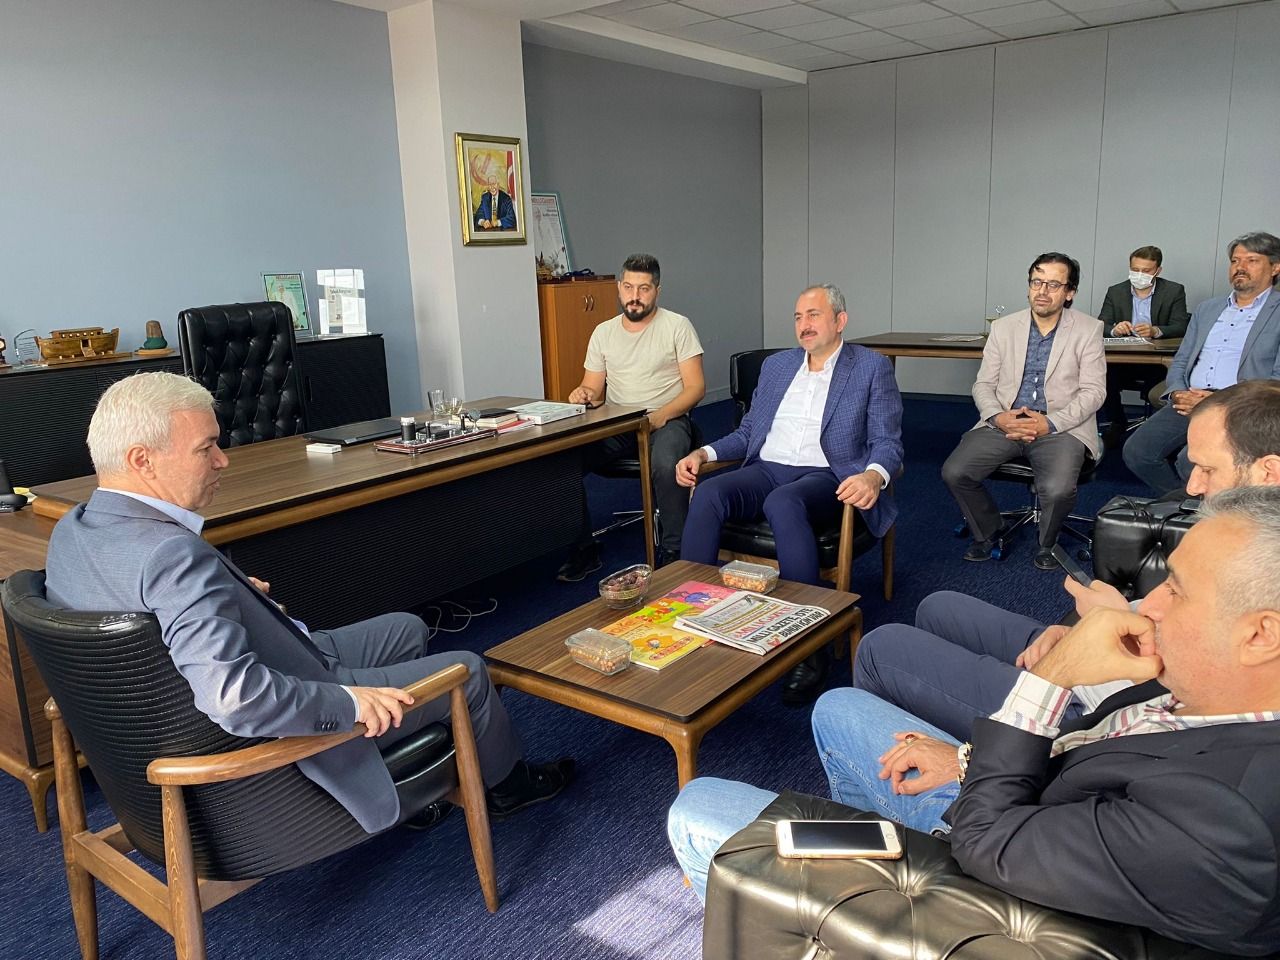 Justice Minister Gül visits Milli Gazete